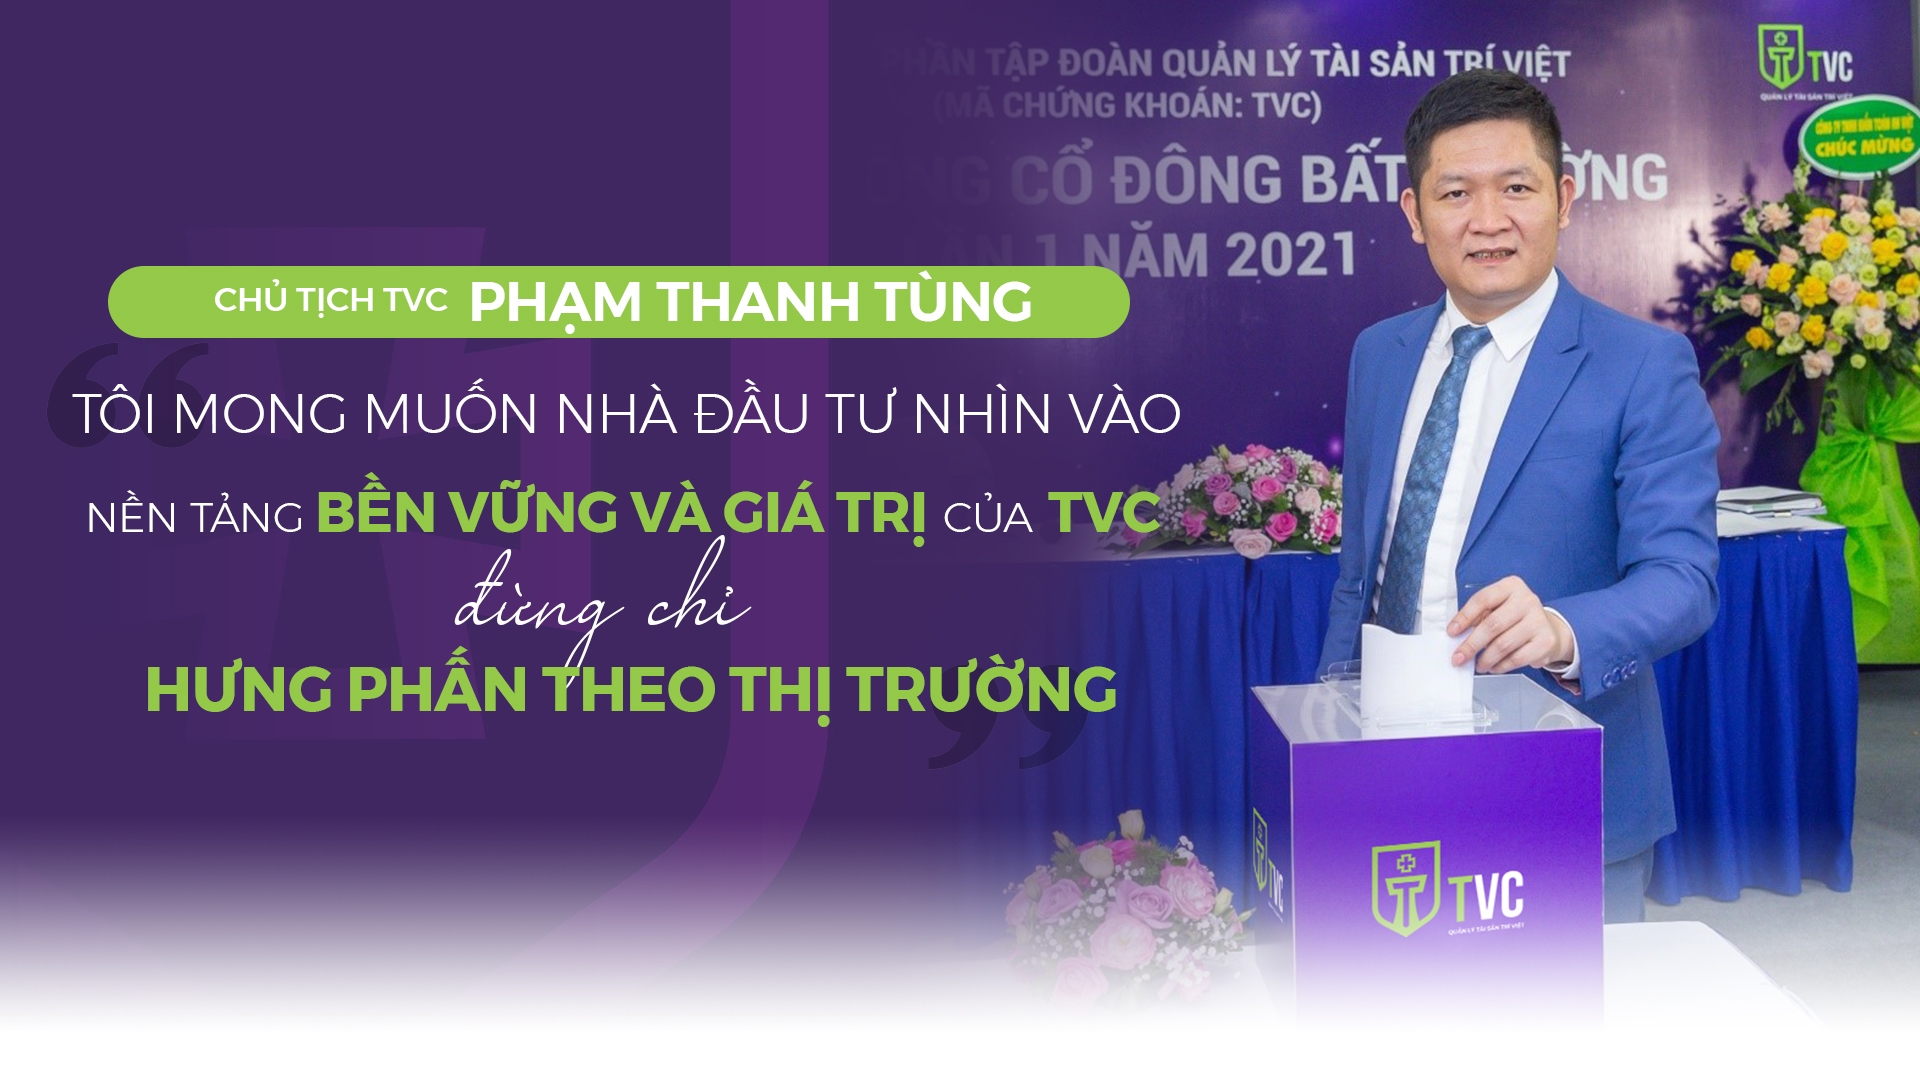 Chủ tịch Tùng Trí Việt: "Tôi mong giá cổ phiếu và Công ty tăng trưởng bền vững"